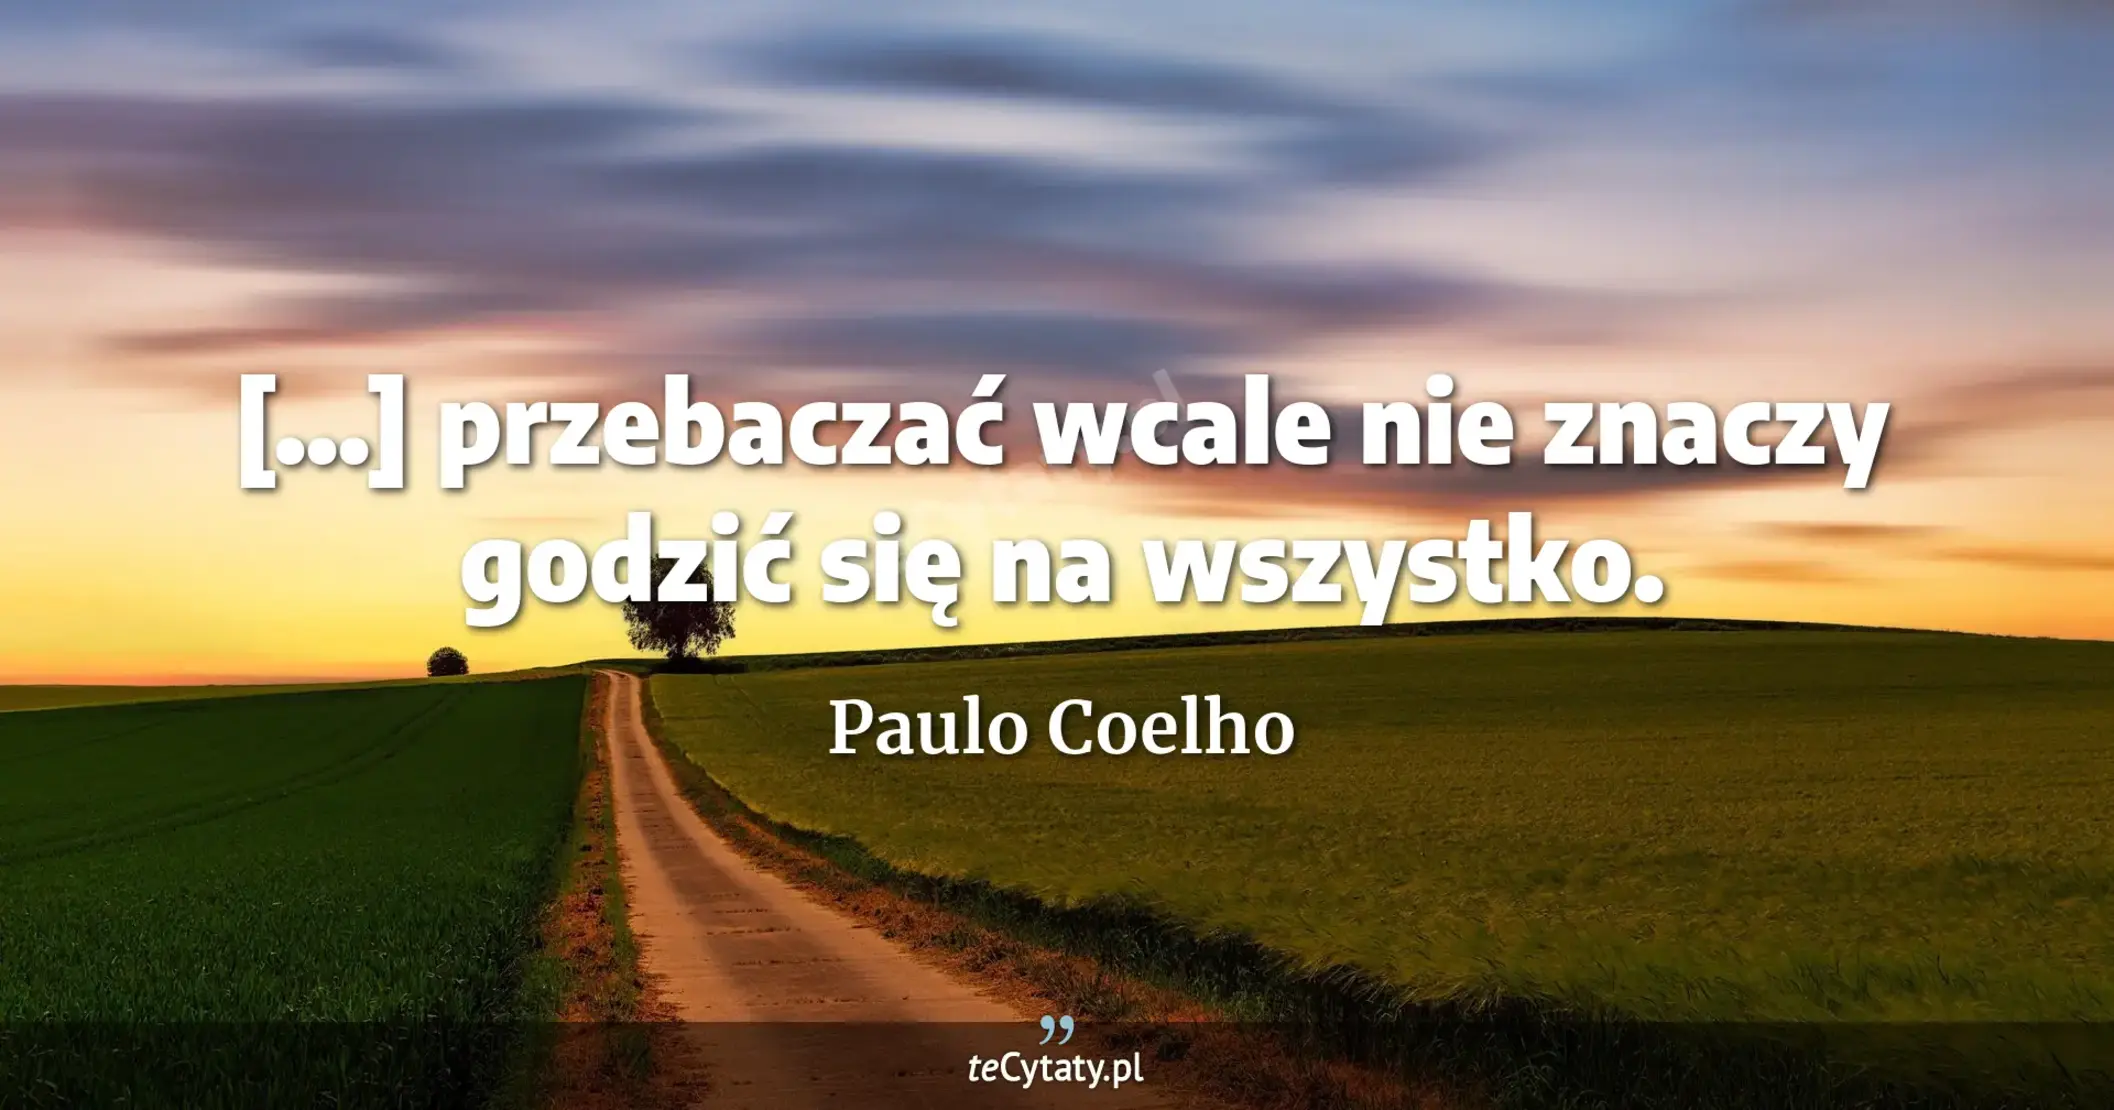 [...] przebaczać wcale nie znaczy godzić się na wszystko. - Paulo Coelho